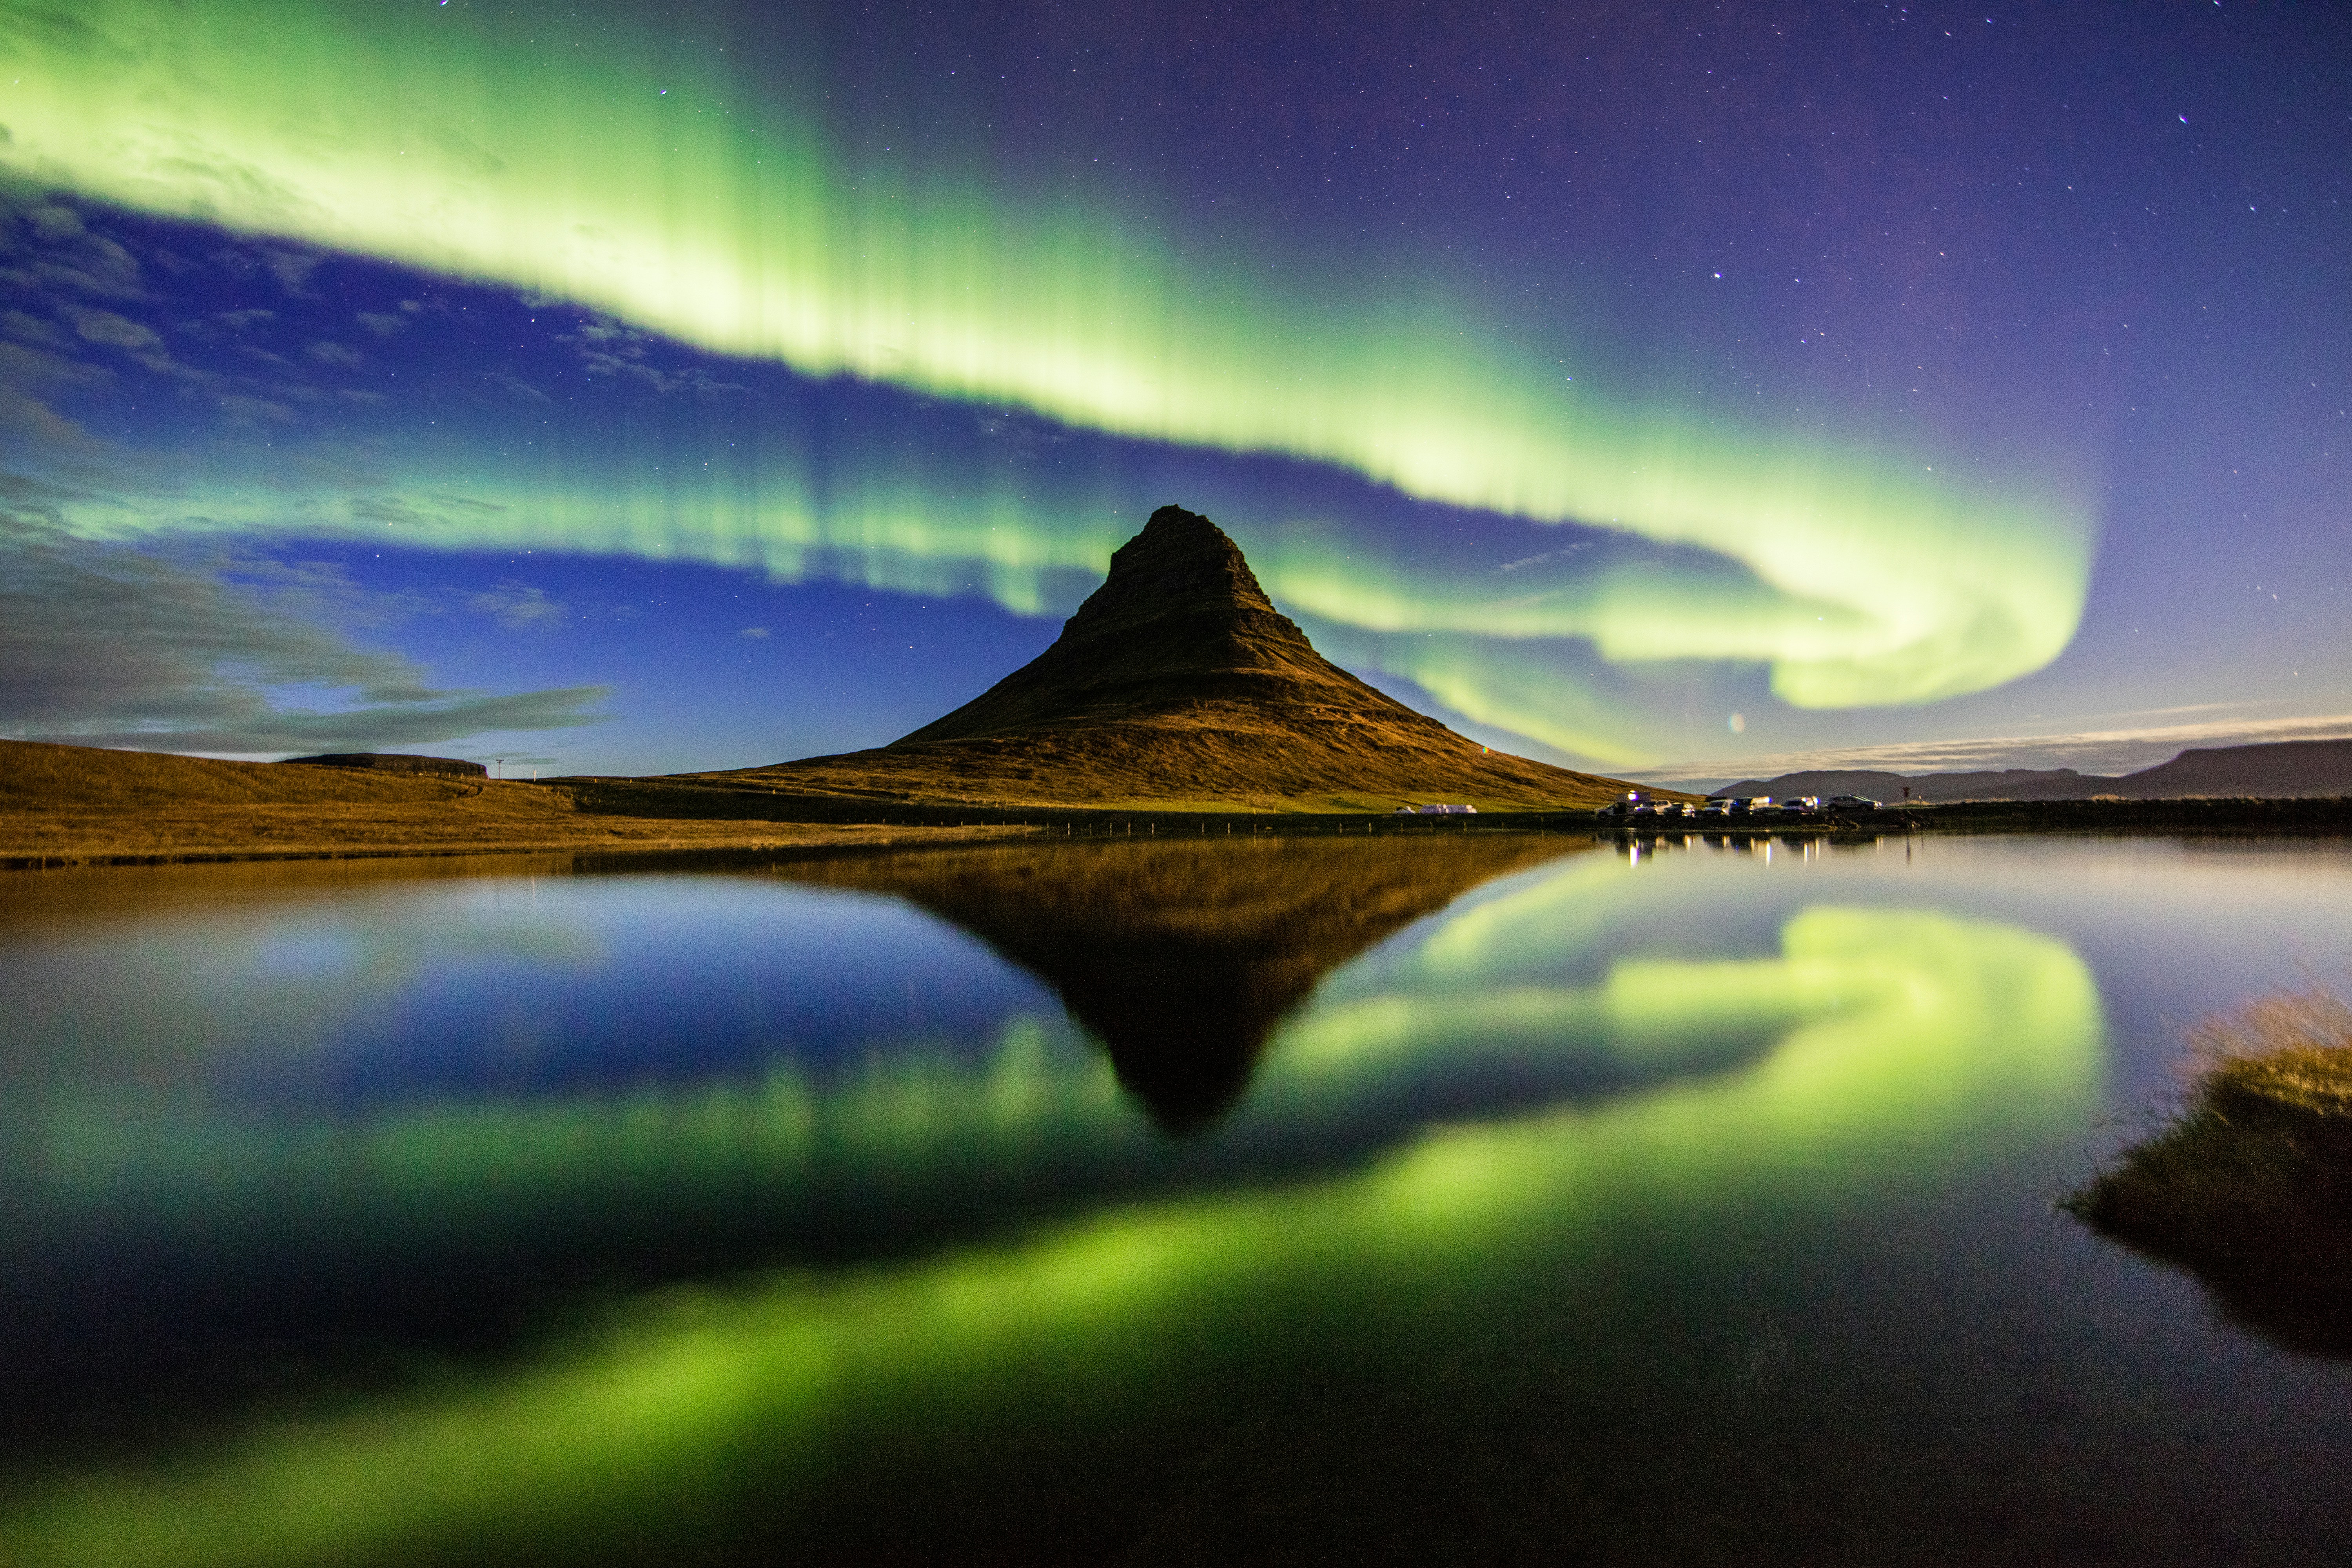 sjö med norrsken i himlen under natten på Island